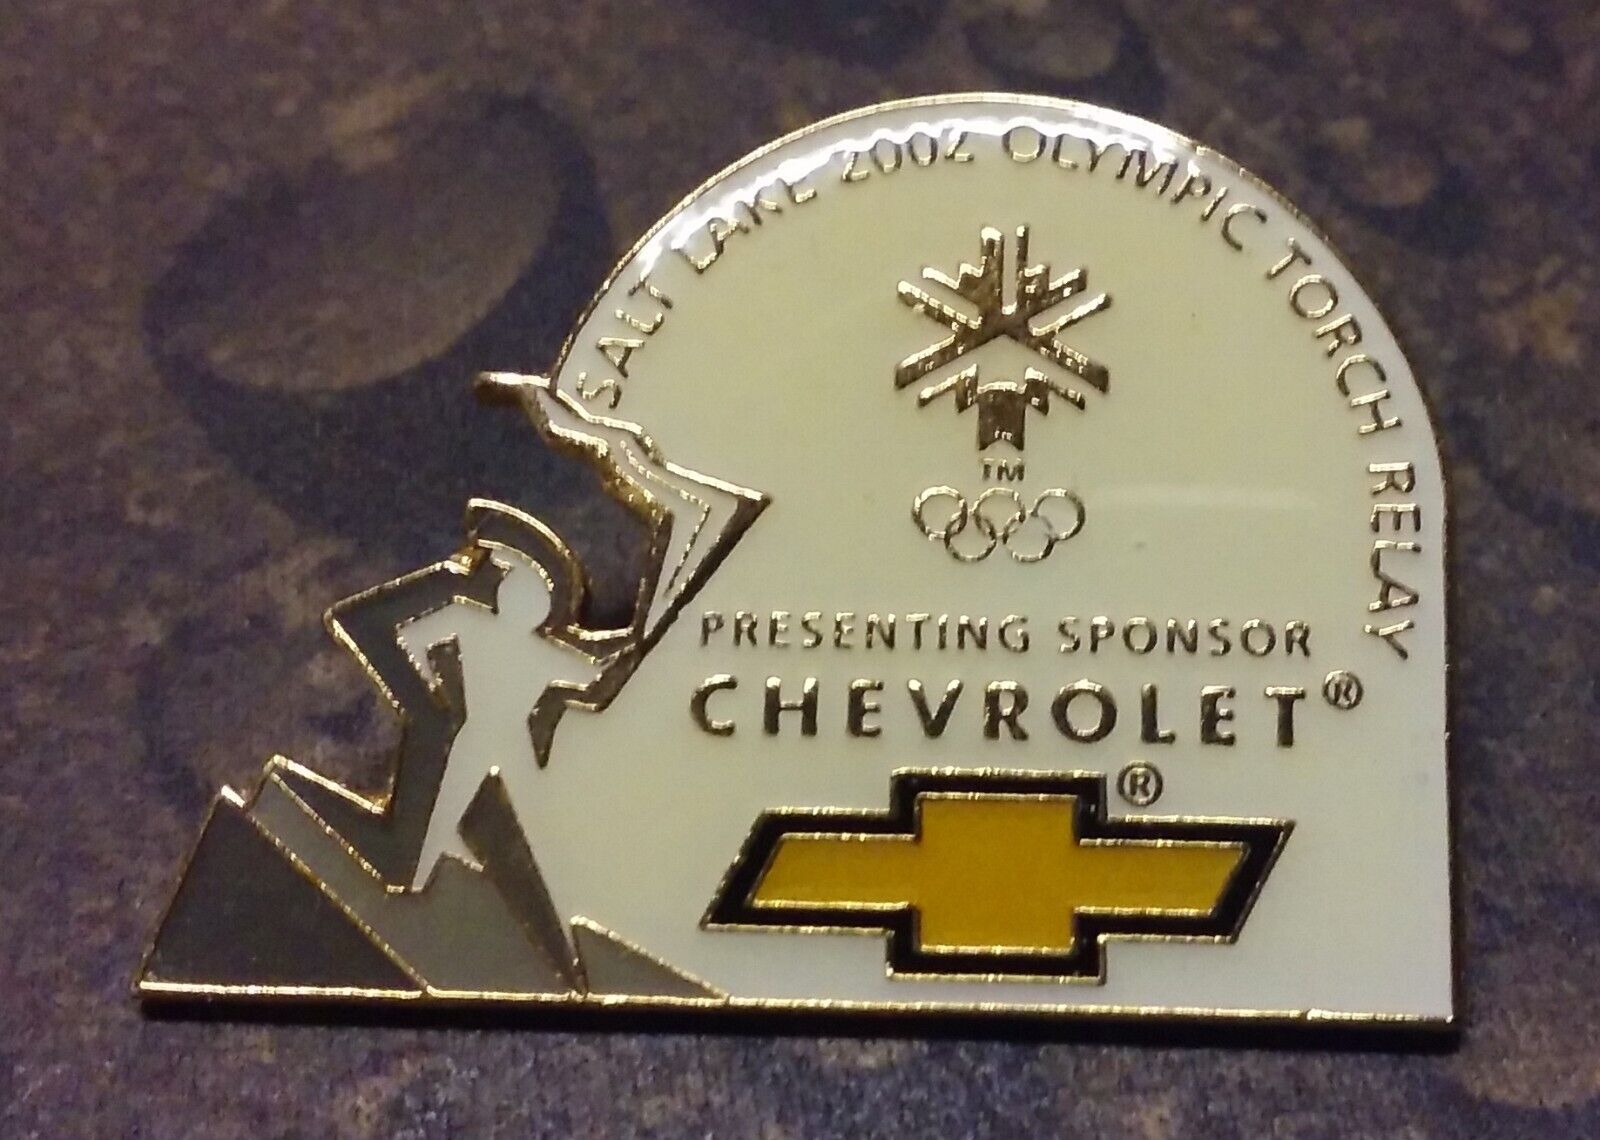 2002 Chevrolet Salt Lake Utah Olympic Torch Relay pin badge a Presenting Sponsor